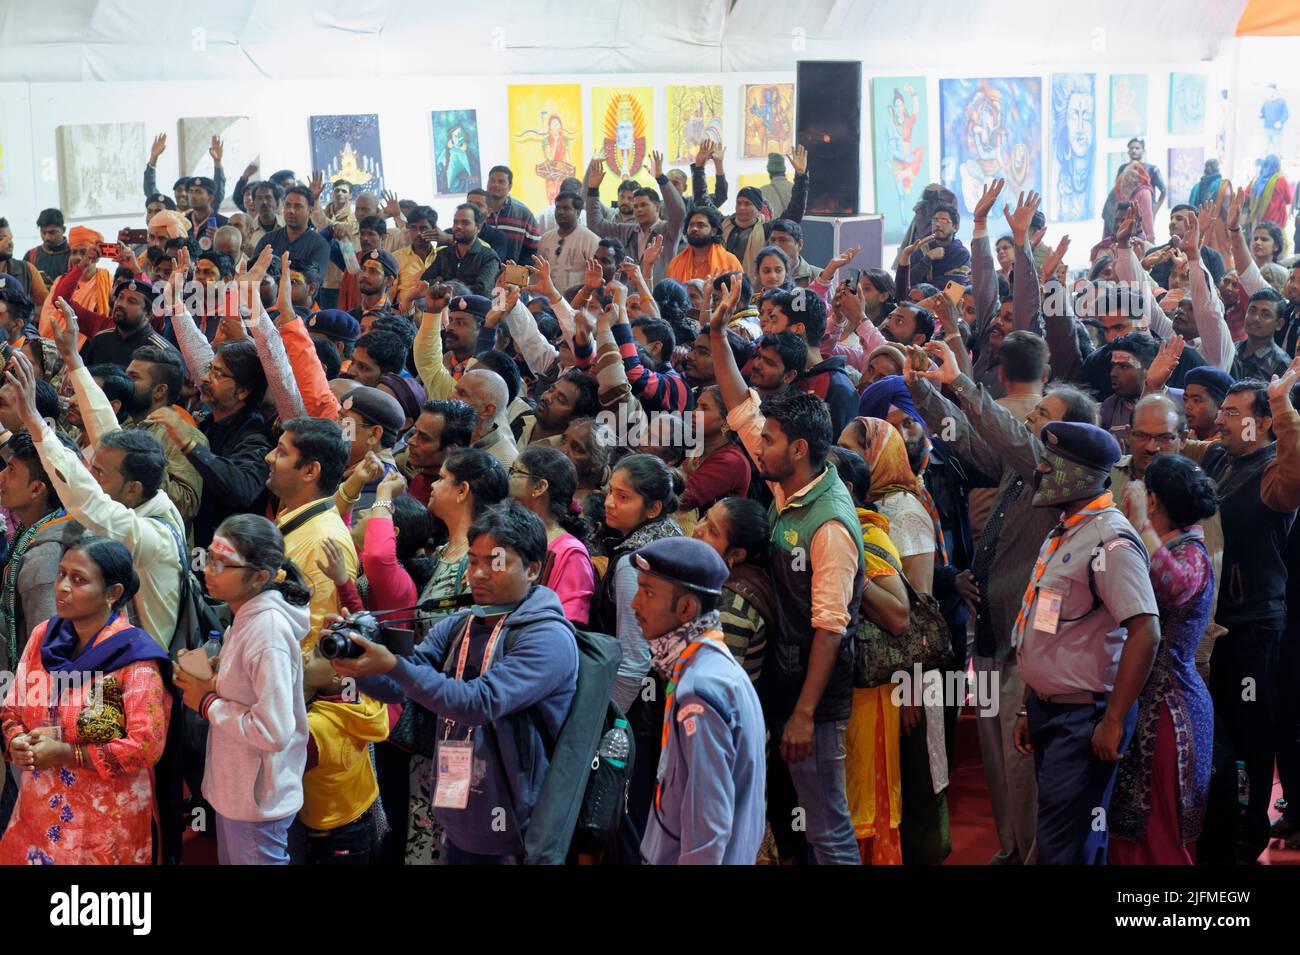 Aclamaciones de la multitud. Templo del grupo comunitario Hijra, Allahabad Kumbh Mela, la reunión religiosa más grande del mundo, Uttar Pradesh, India Foto de stock